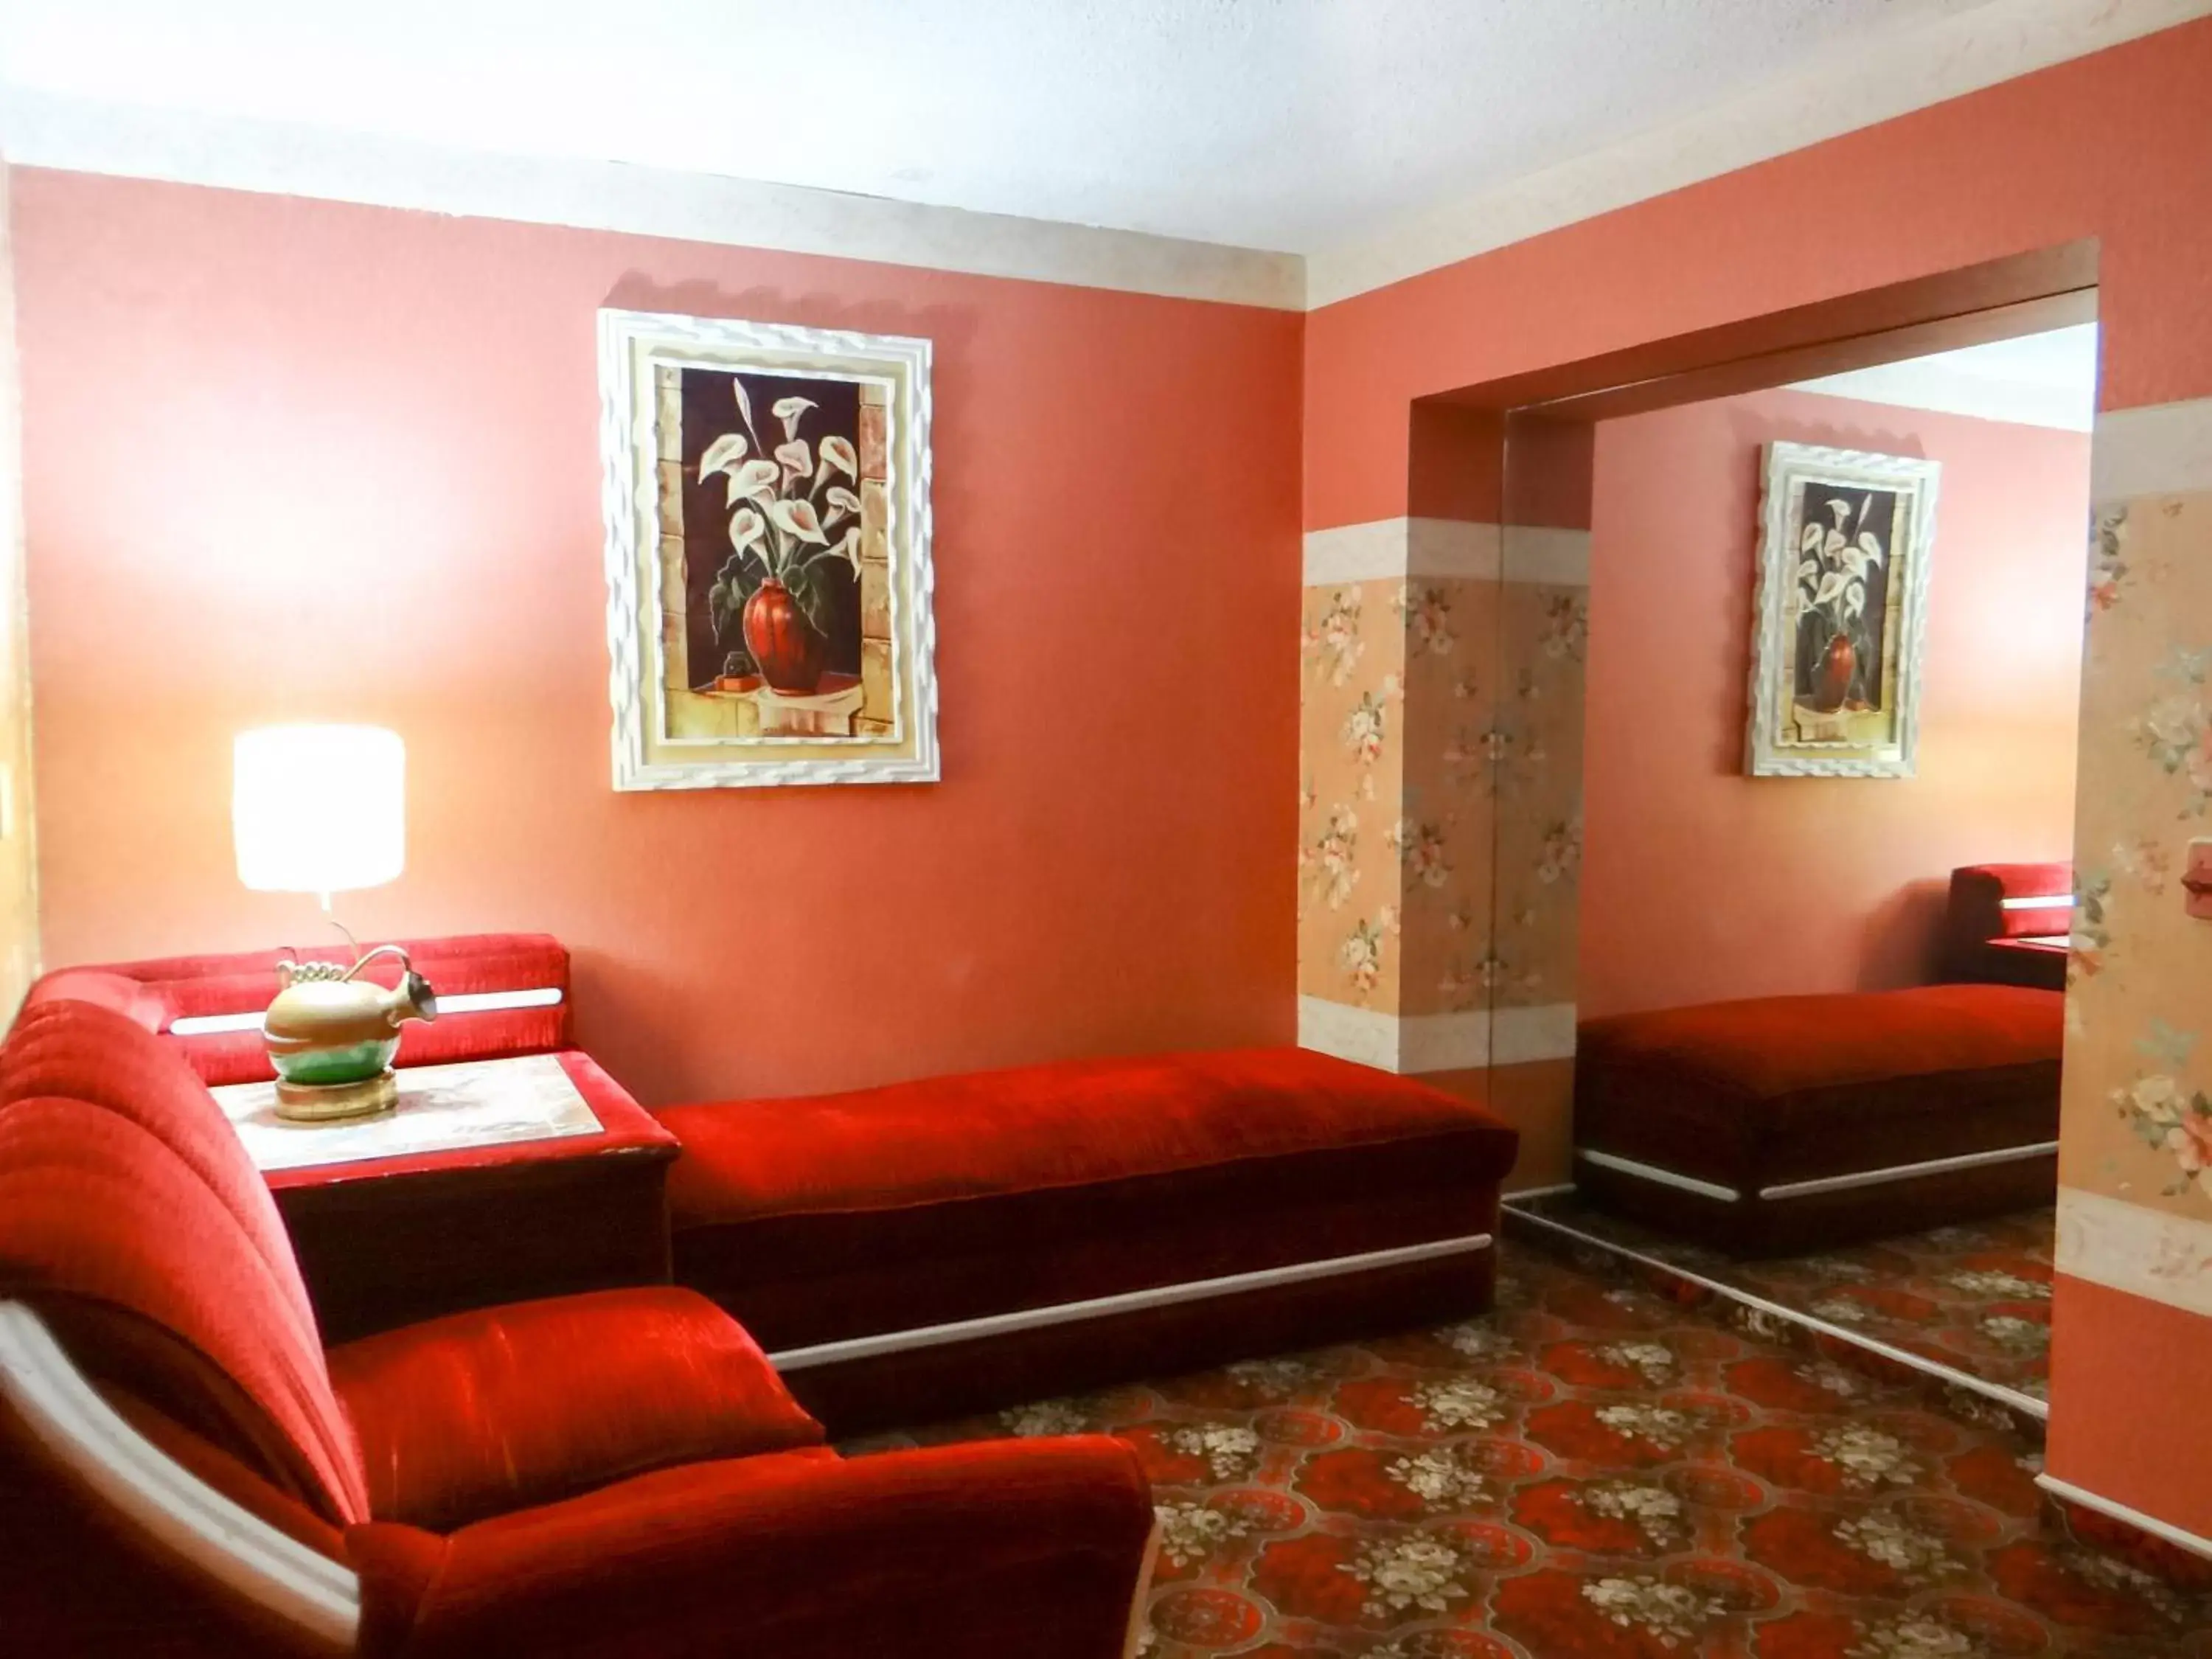 Seating Area in El Gran Marques Hotel/Motel